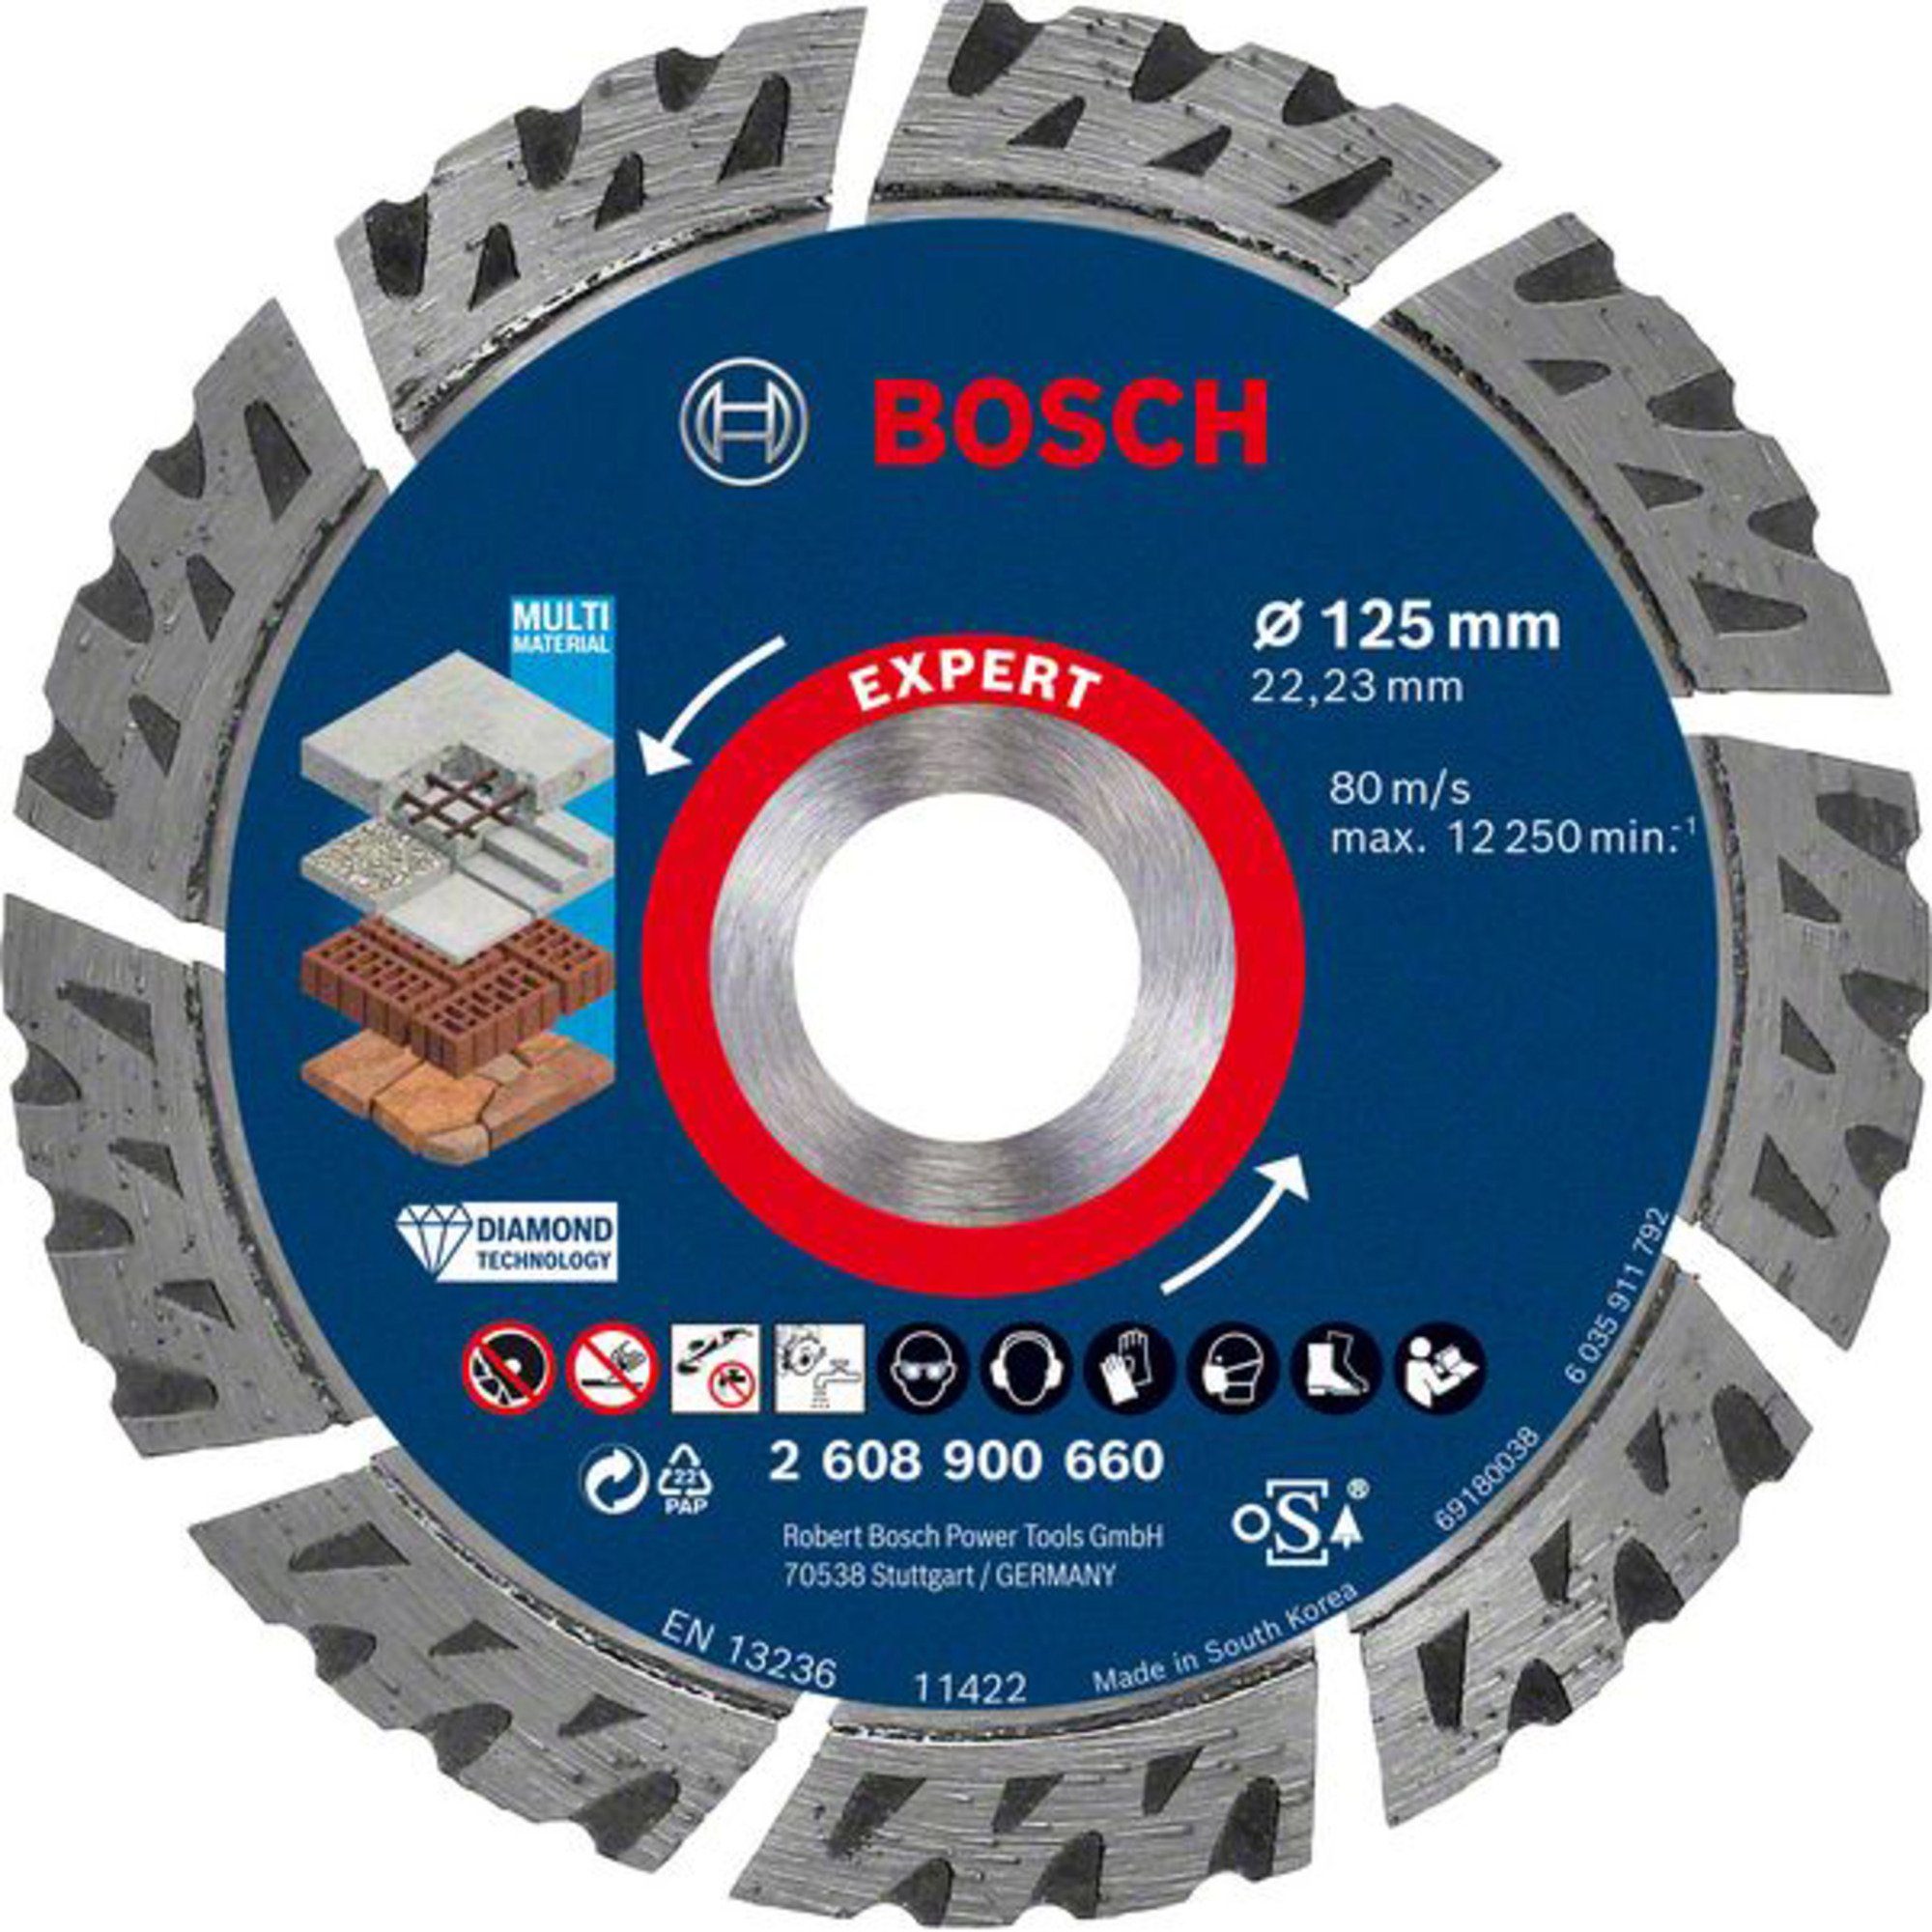 Bosch Professional Diamanttrennscheibe Expert x 2,2 22,23 Beton, Mauerwerk, Materialeignung: Ø MultiMaterial, Stein mm, 125 x mm, 12